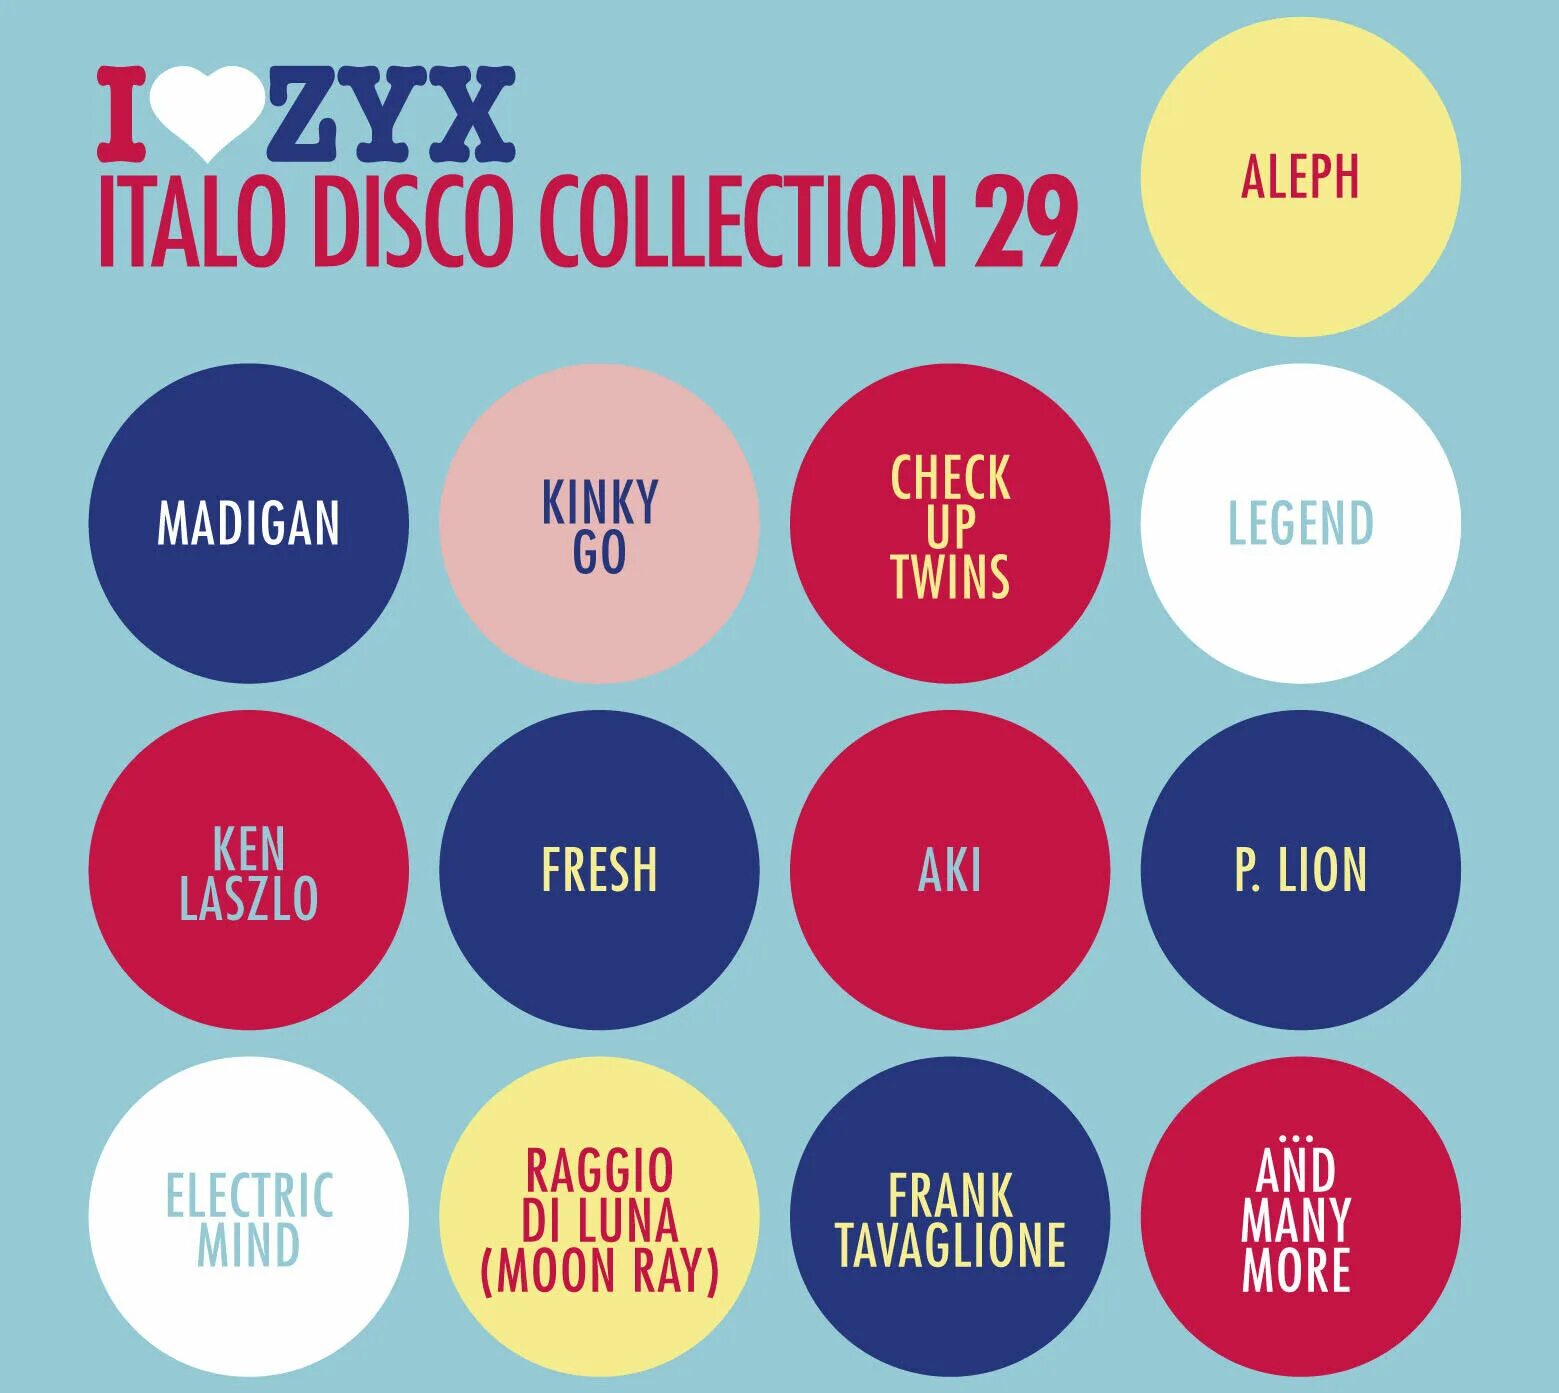 Italo disco collection. I Love ZYX Italo Disco collection 29. I Love ZYX Italo Disco collection. I Love ZYX Italo Disco collection 26. ZYX Disco collection.